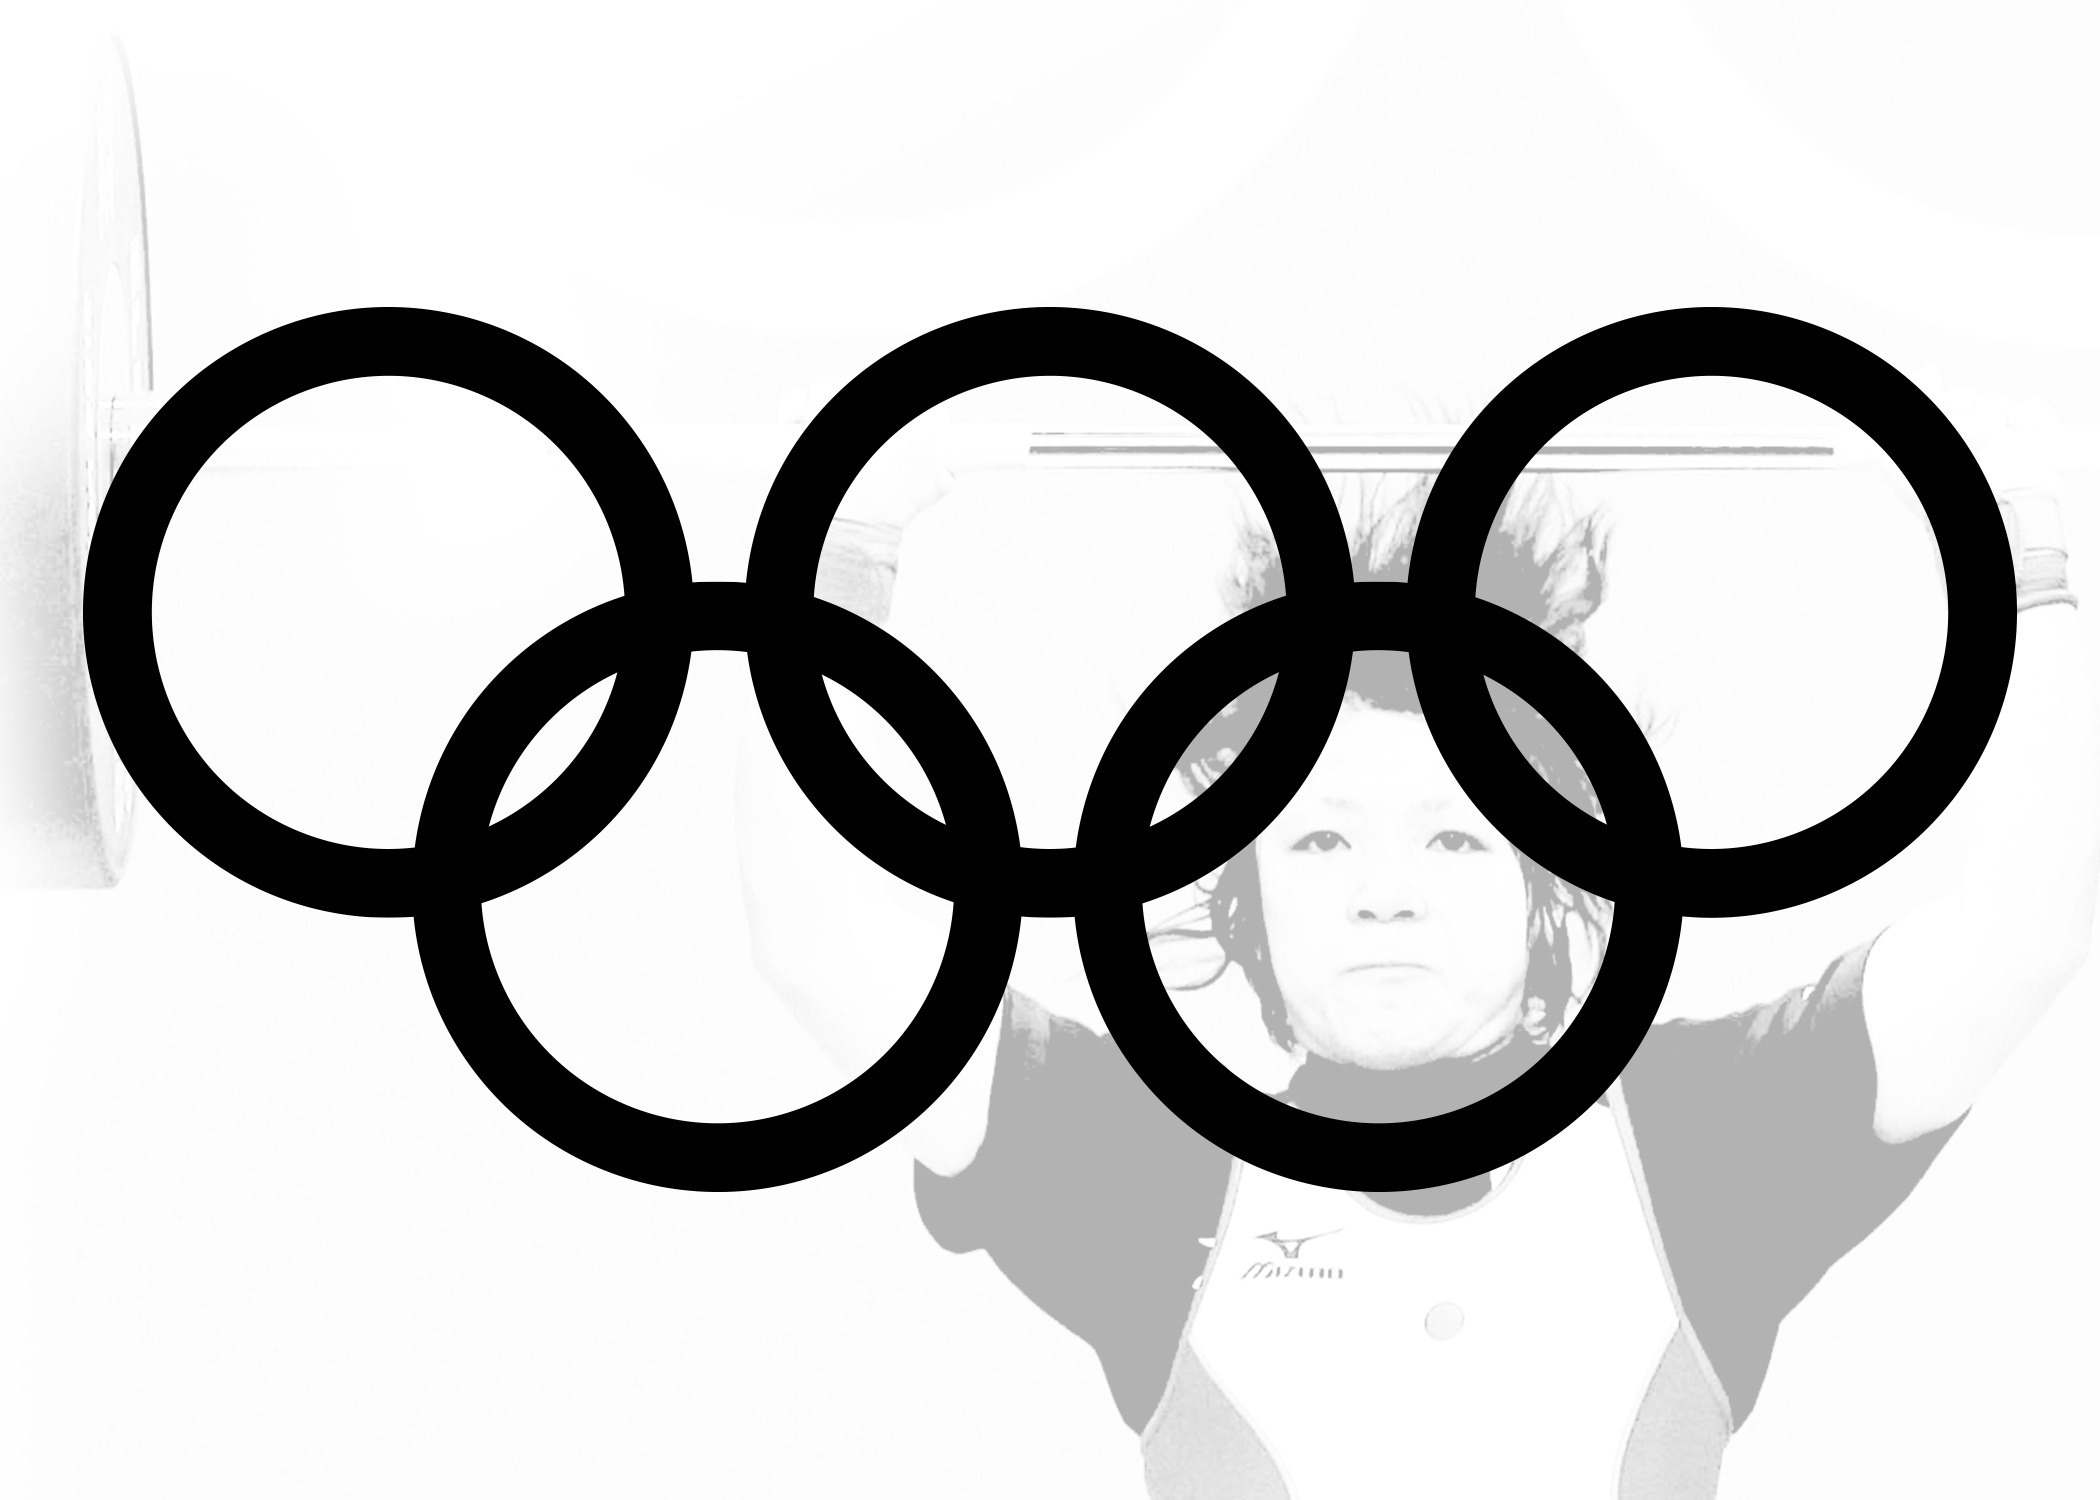 Олимпийские кольца раскраска для детей